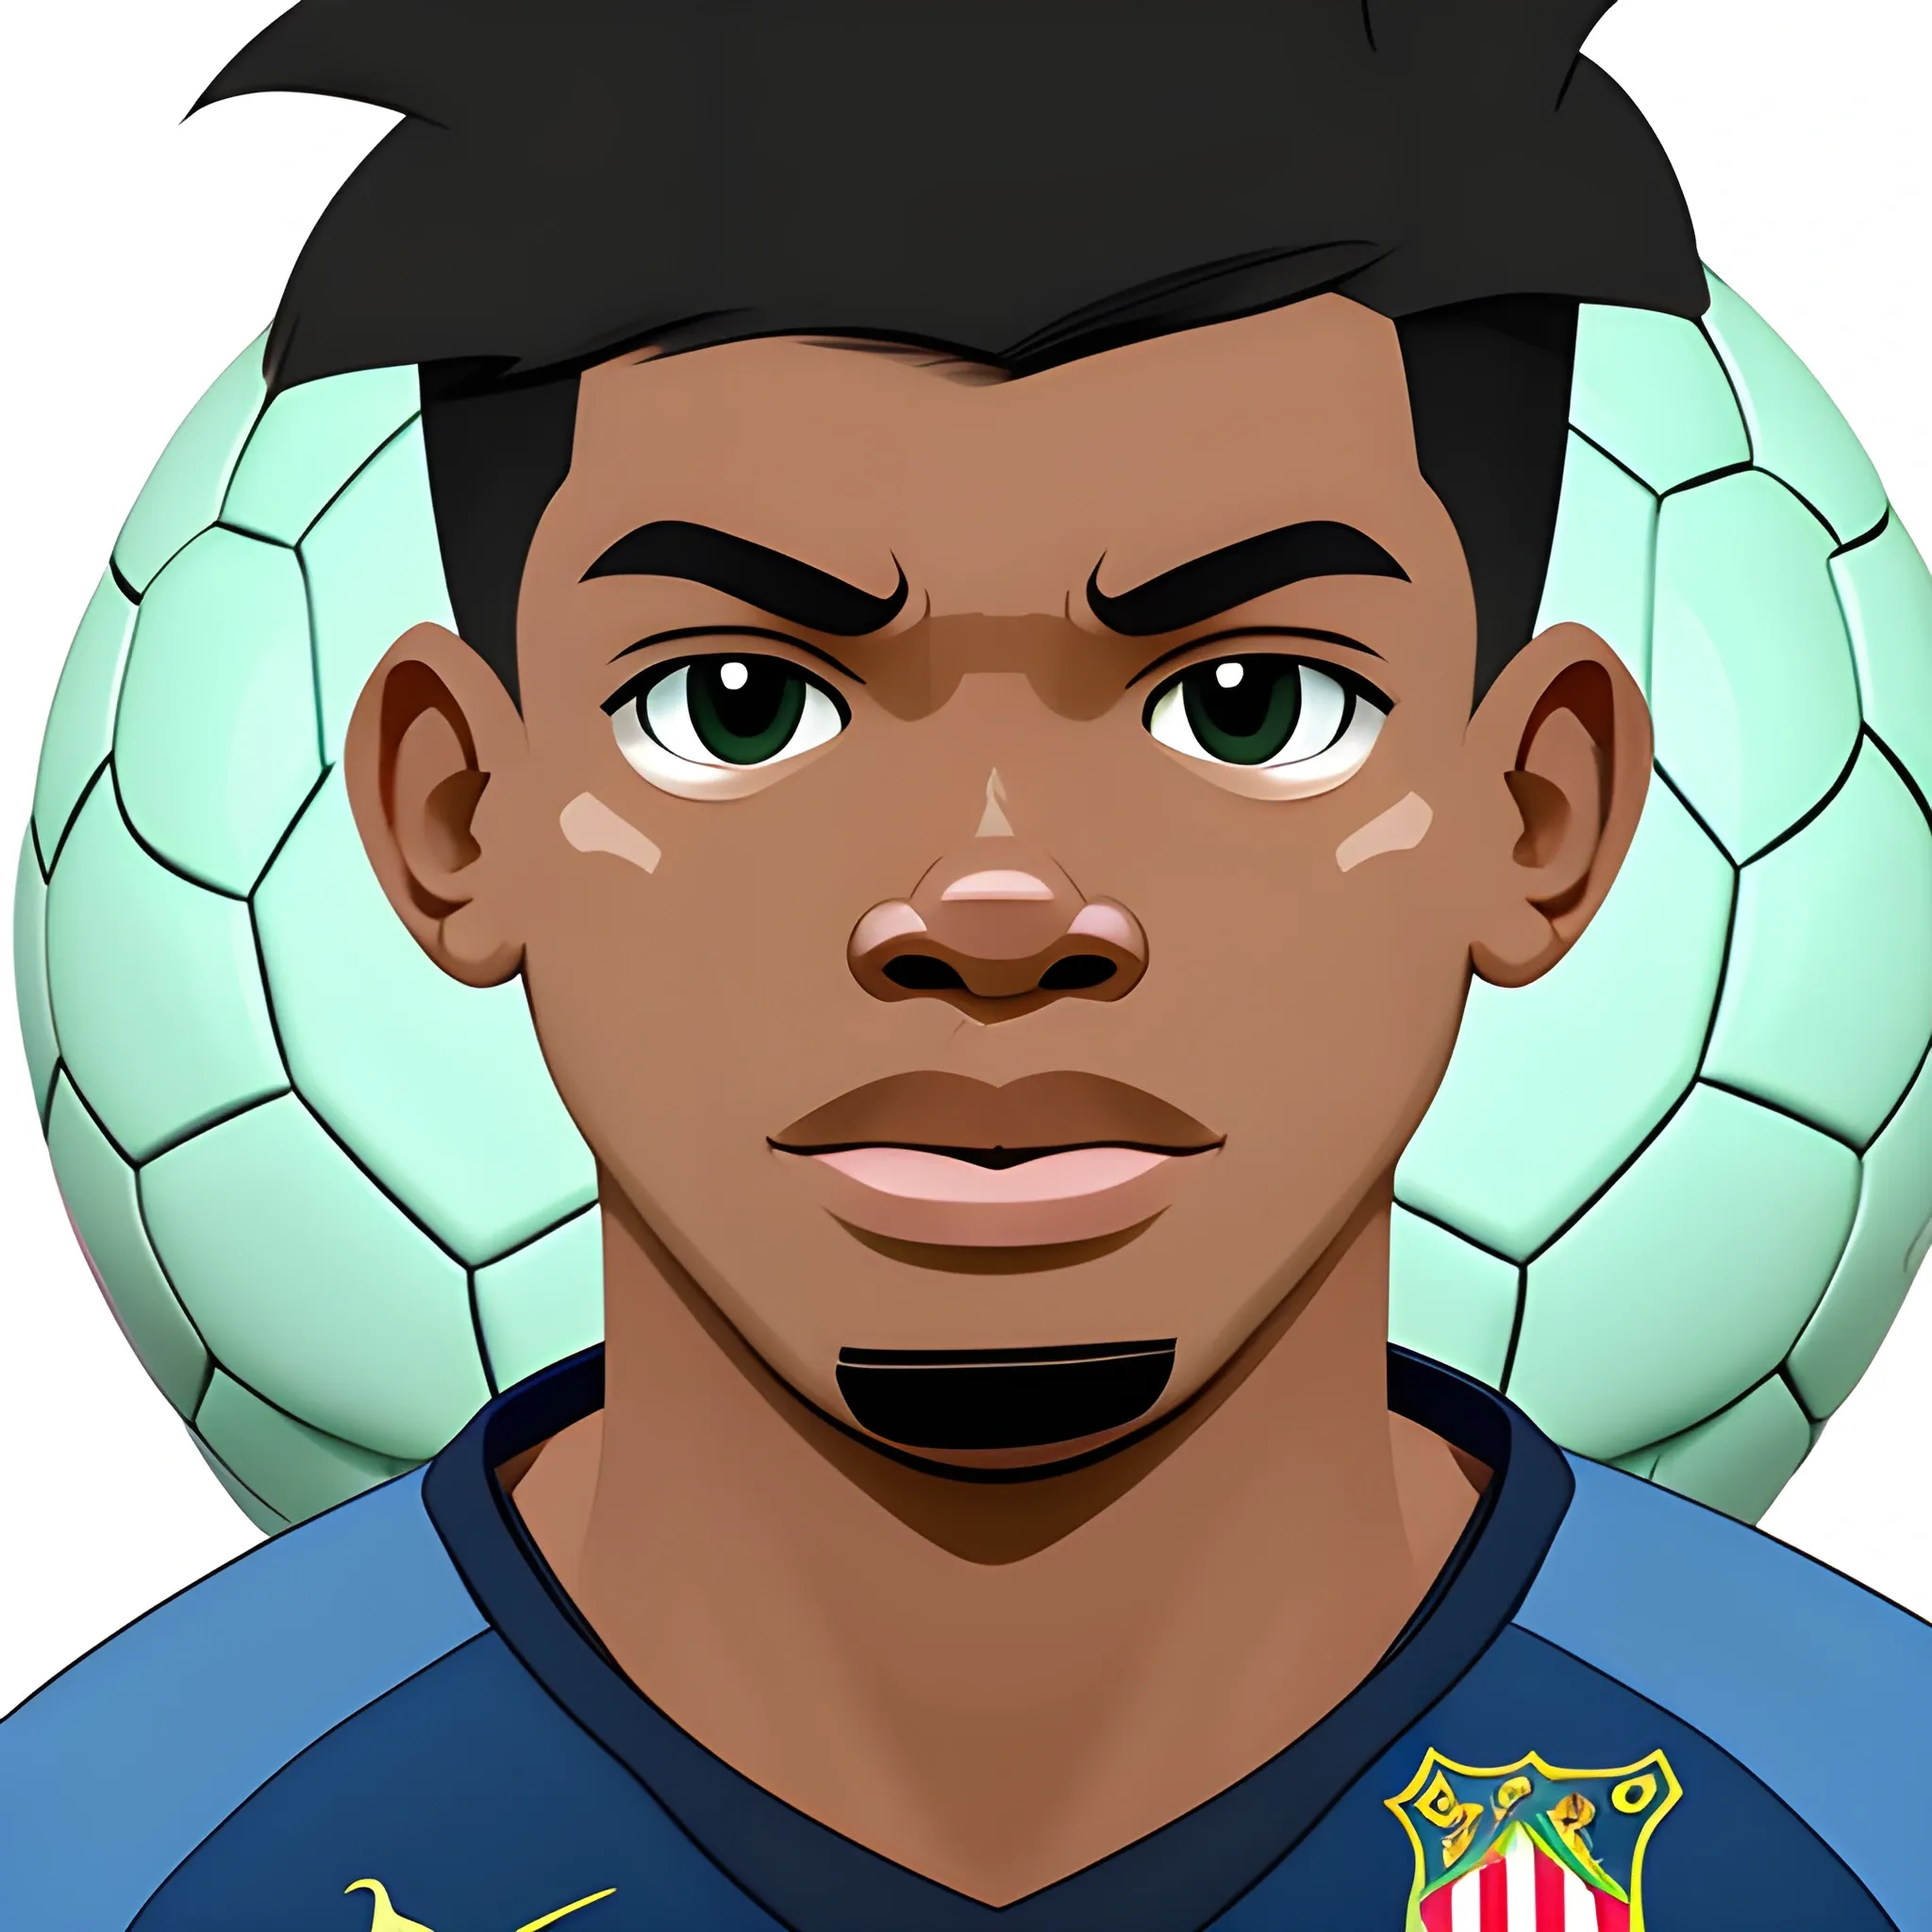 Character, soccer ballon, Rafael Leão face. Toon style